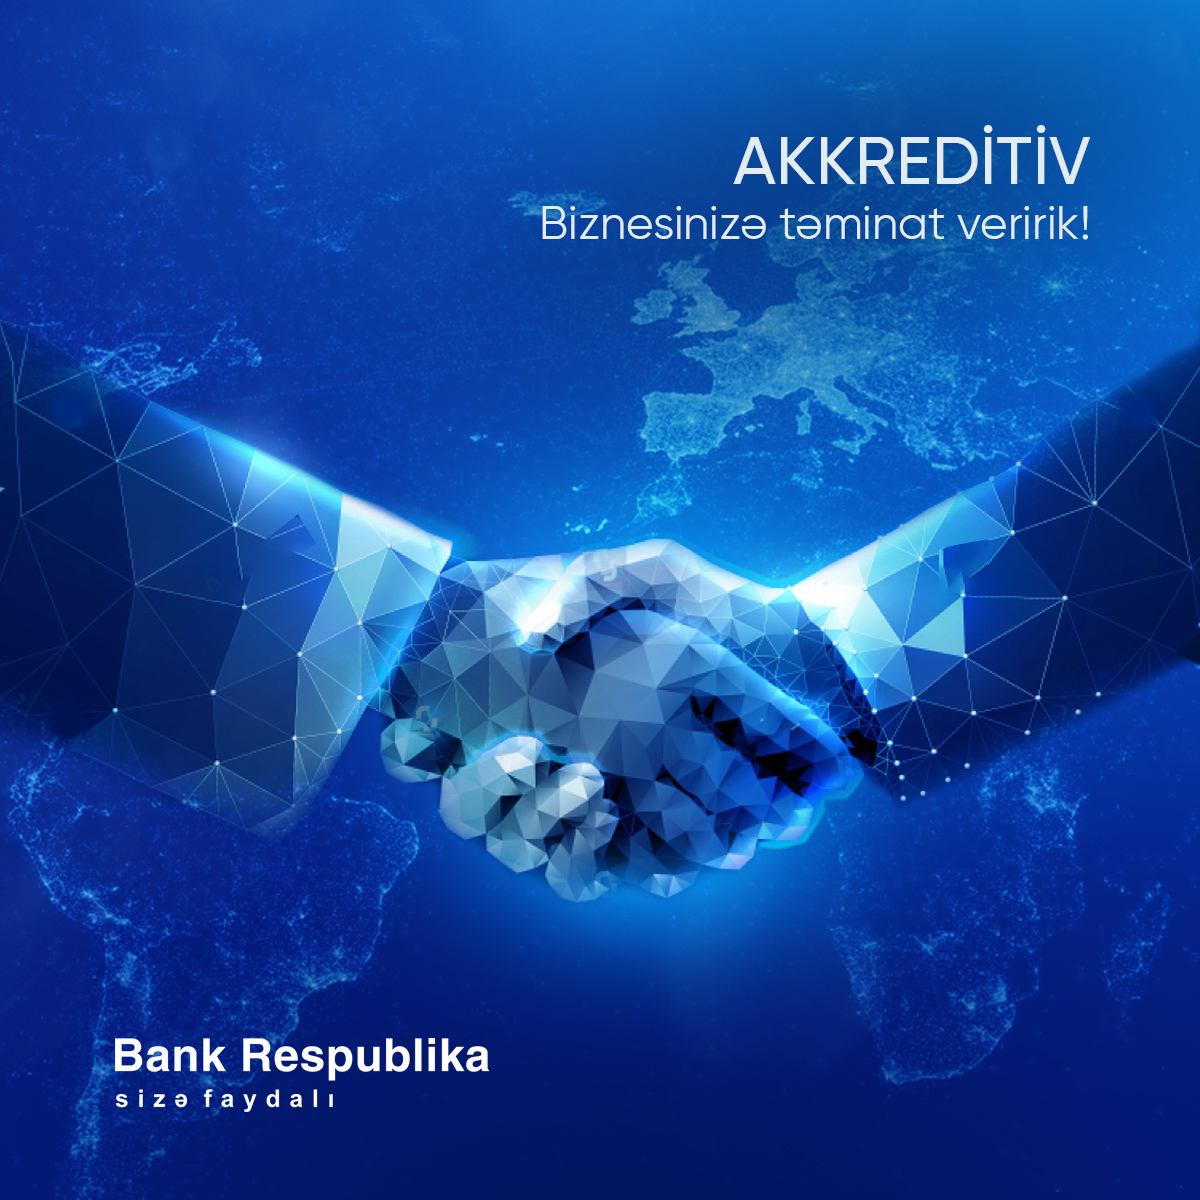 Минимизируйте потенциальные риски и возможные издержки с Банк Республика